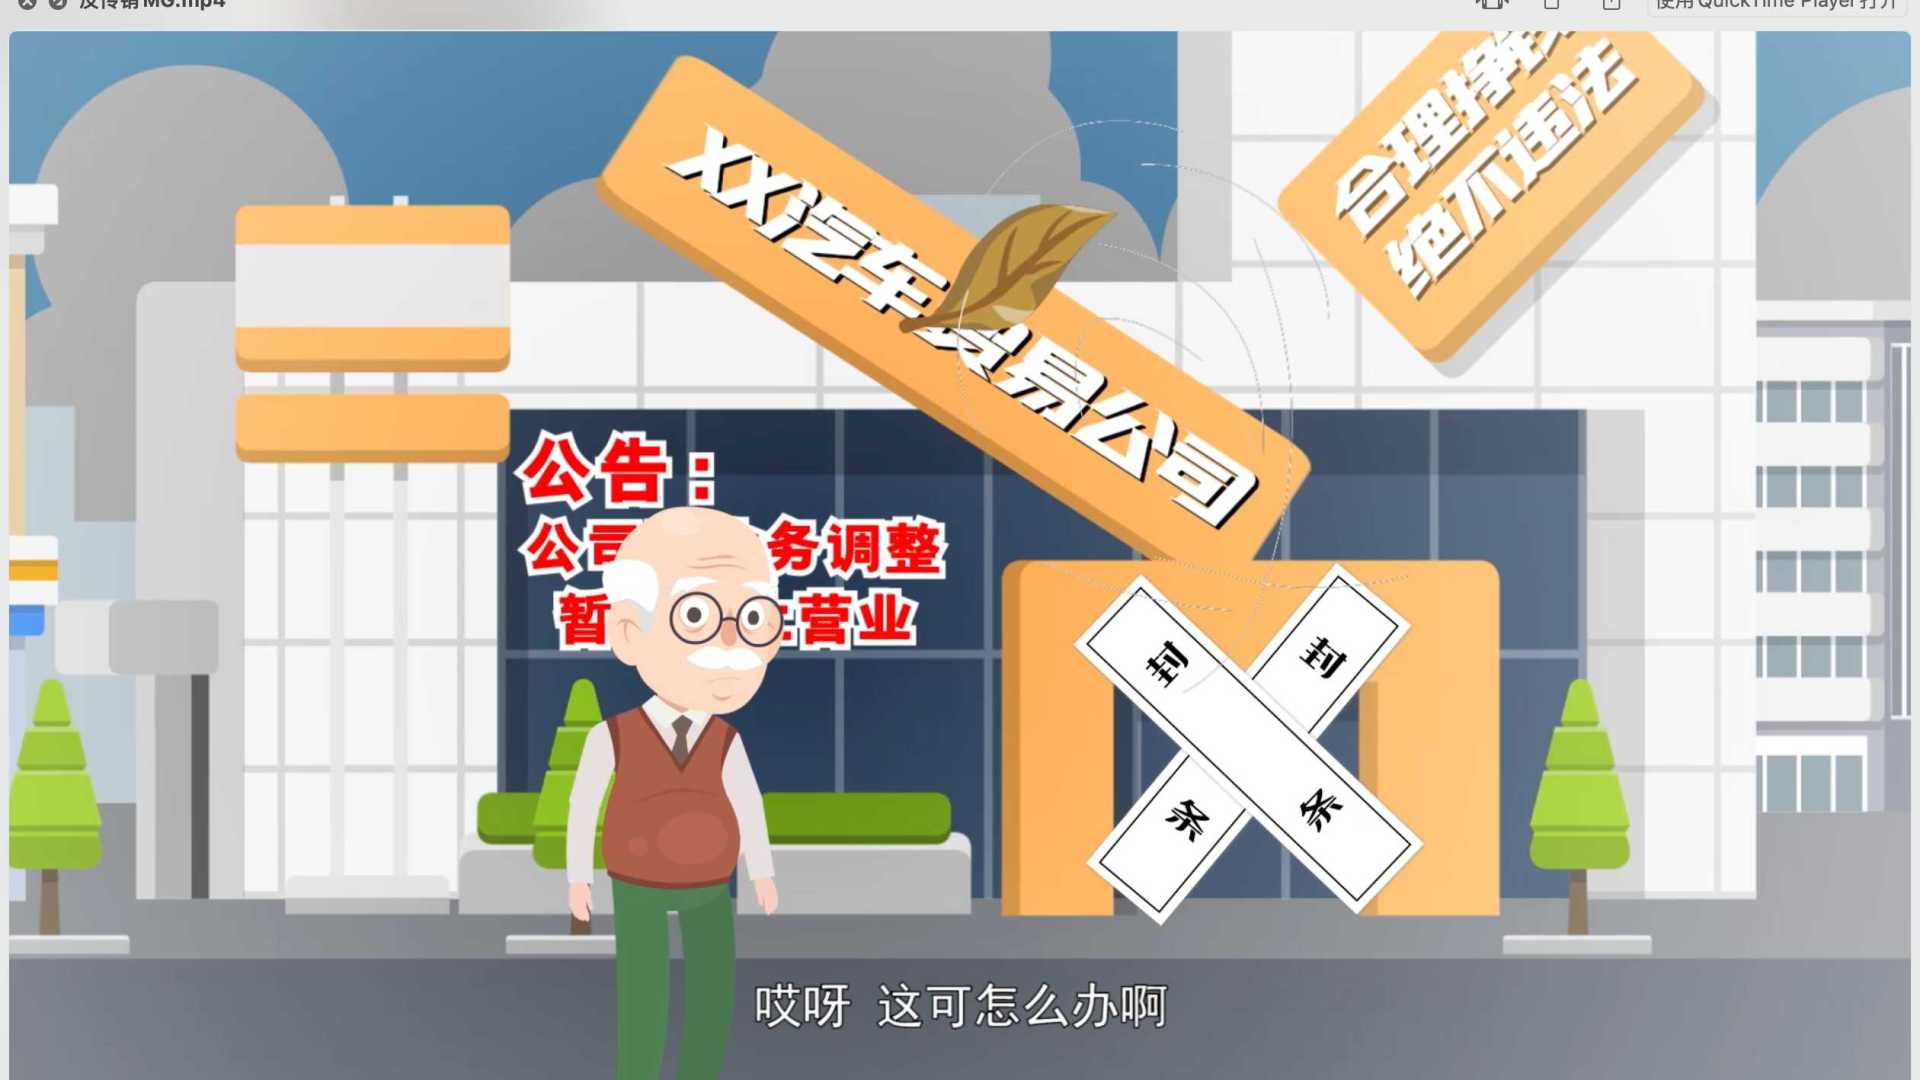 蚌埠市反传销MG动画公益短片